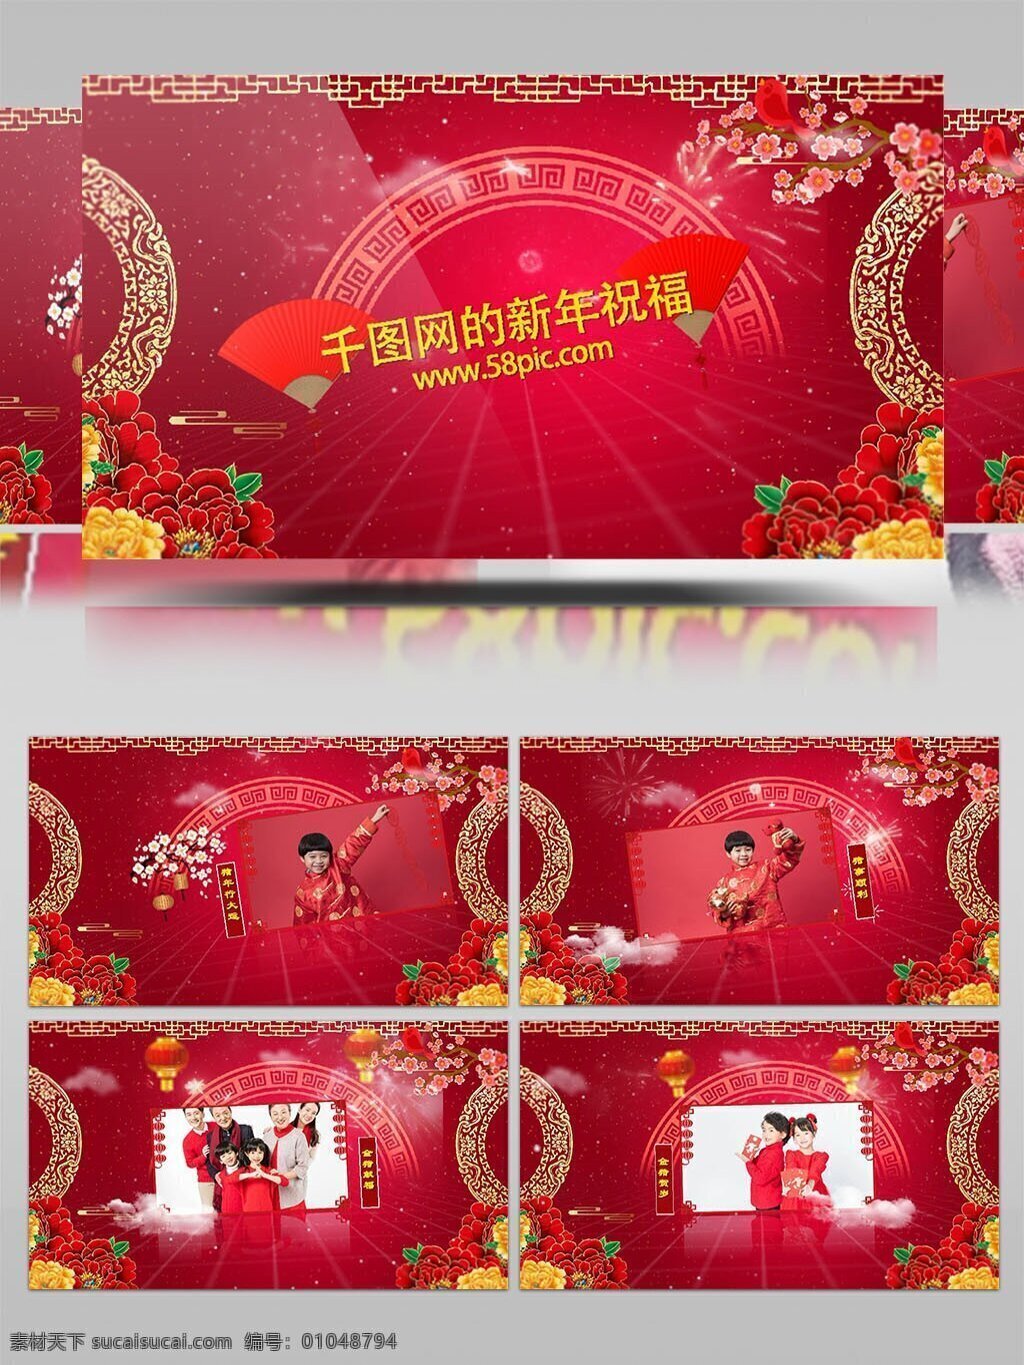 喜庆 春节 新年 祝福 相册 ae 模板 中国风 红色 牡丹 灯笼 新春 拜年 猪年